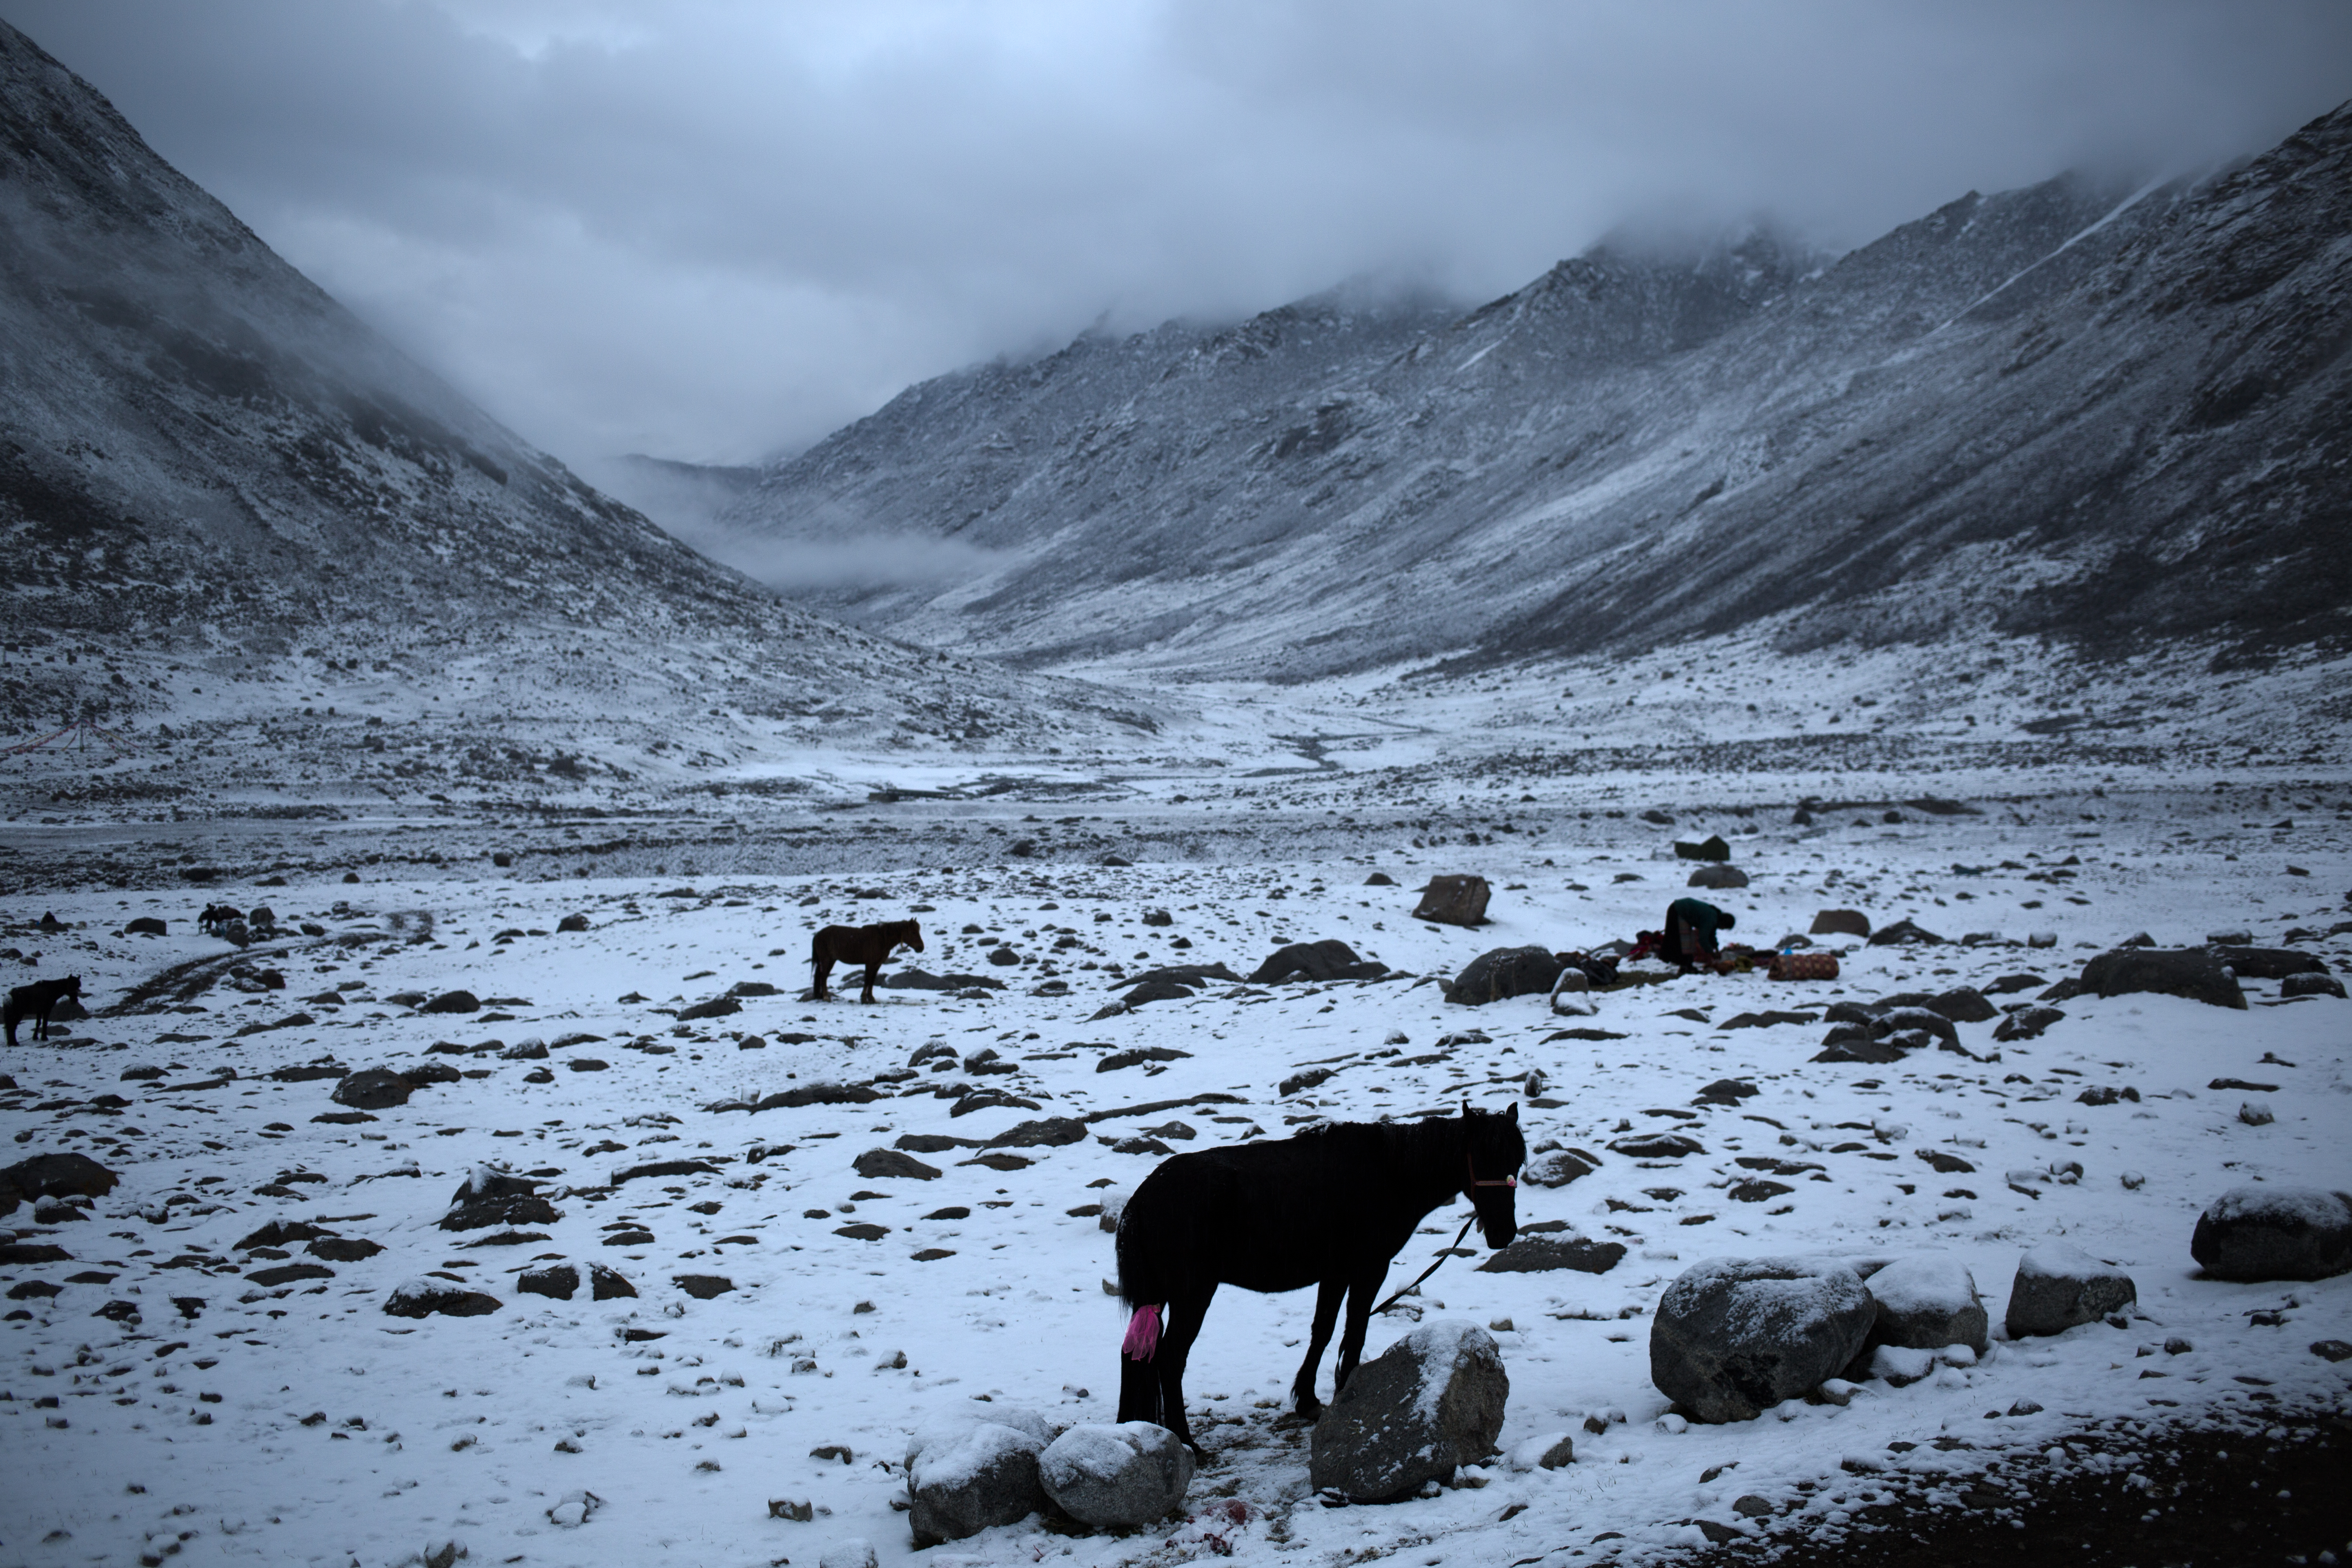 Kailash, Tibet. 2017